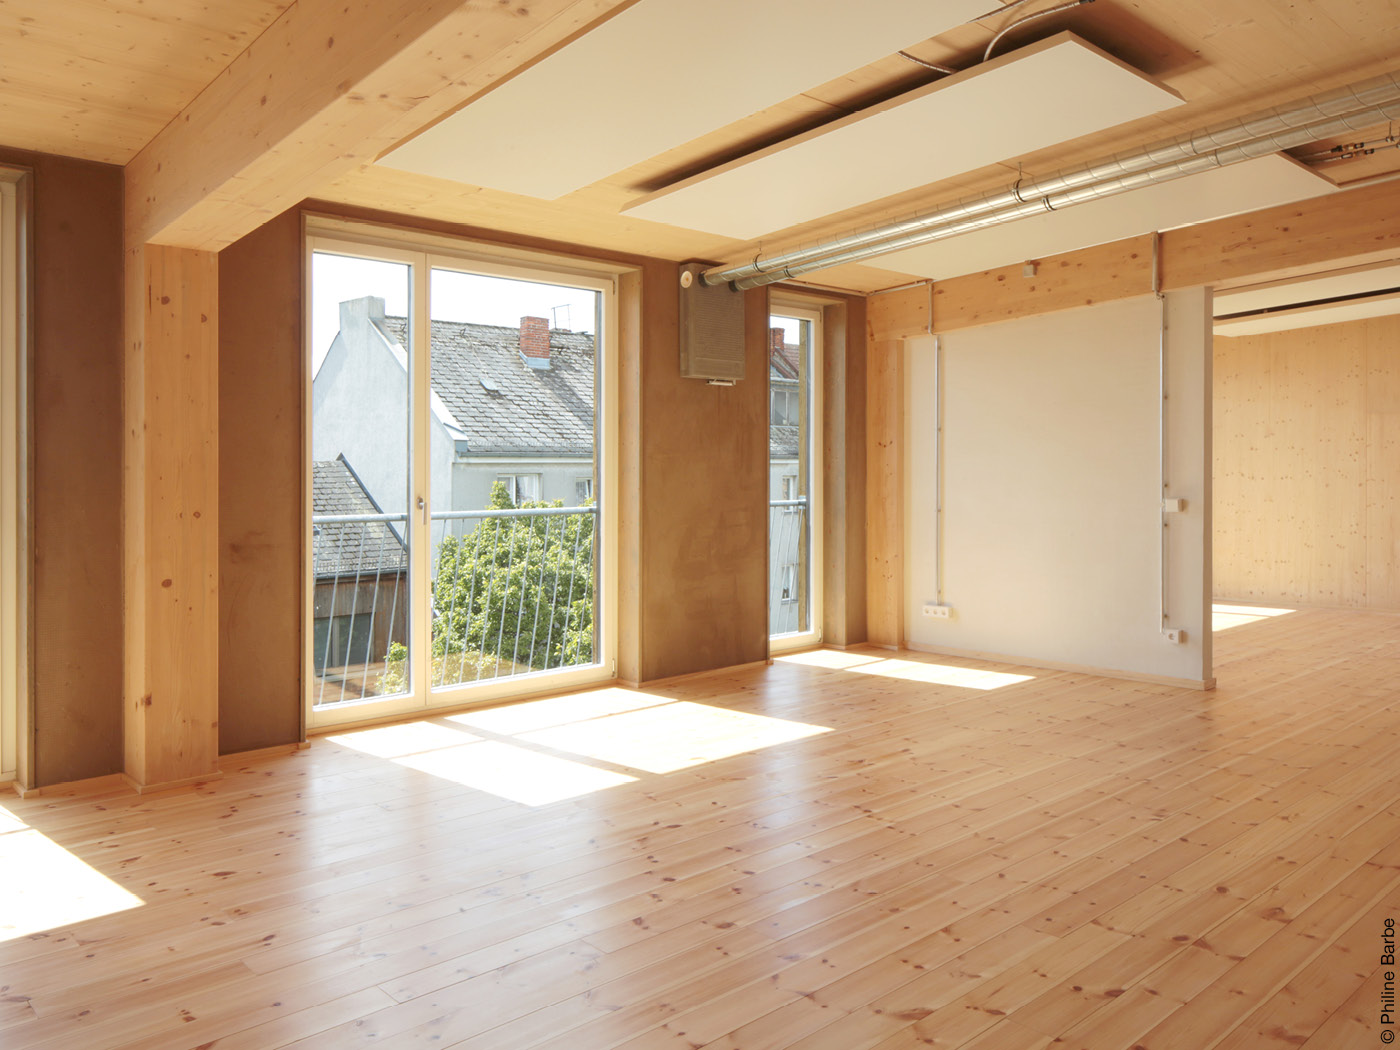 Lichtdurchfluteter Raum mit bodentiefen Fenstern und Holzvertäfelung.